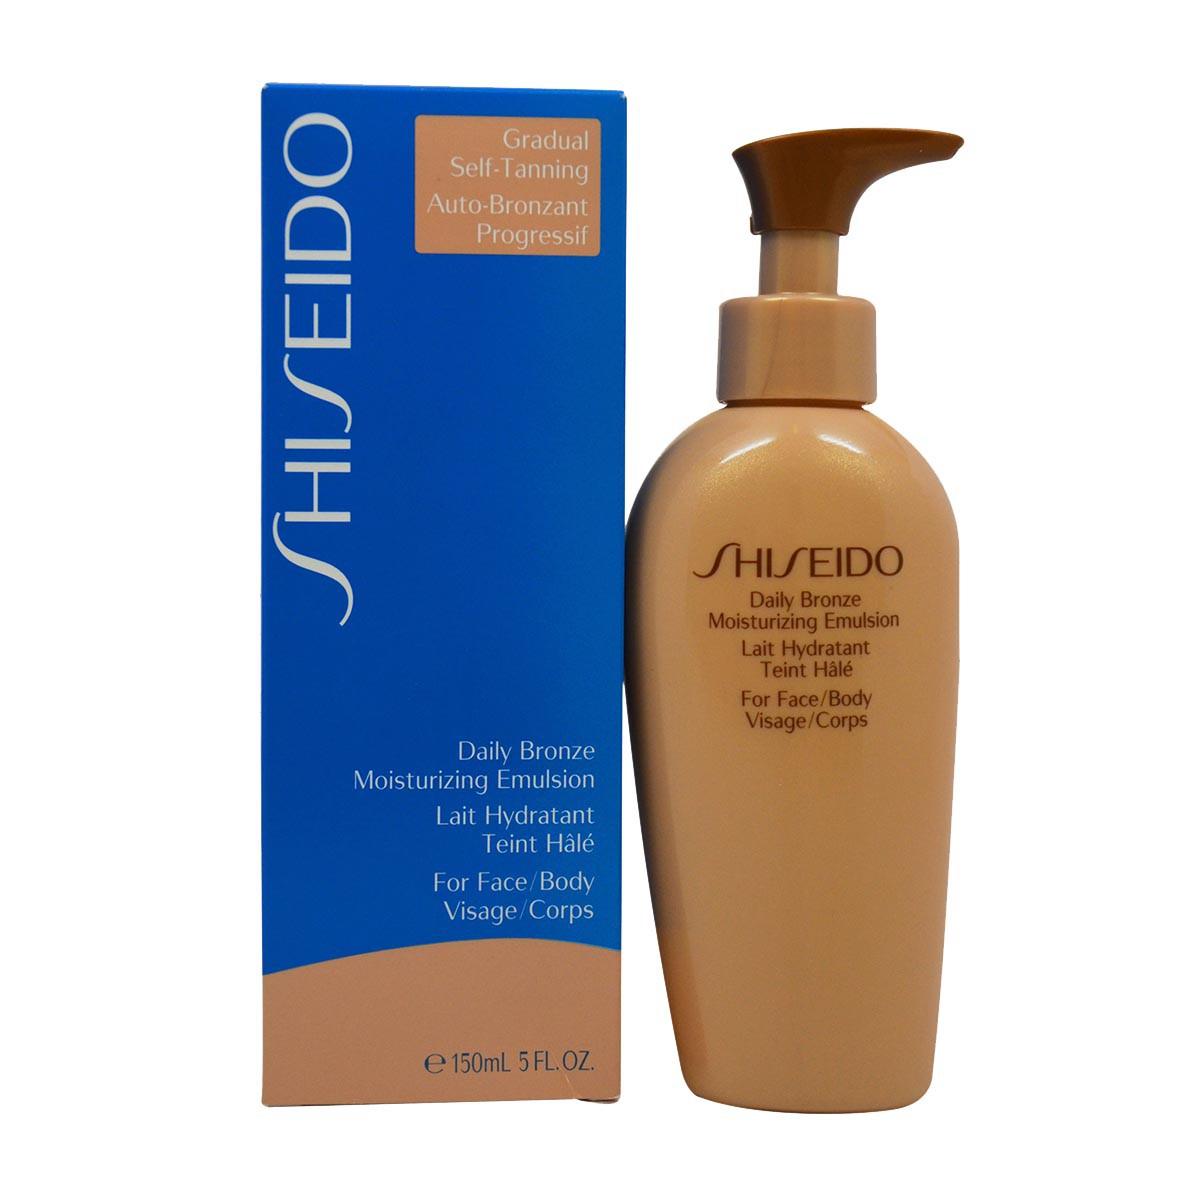 Shiseido Dialy Bronzer Moisturizing Emulsion 150ml Brown| Dressinn